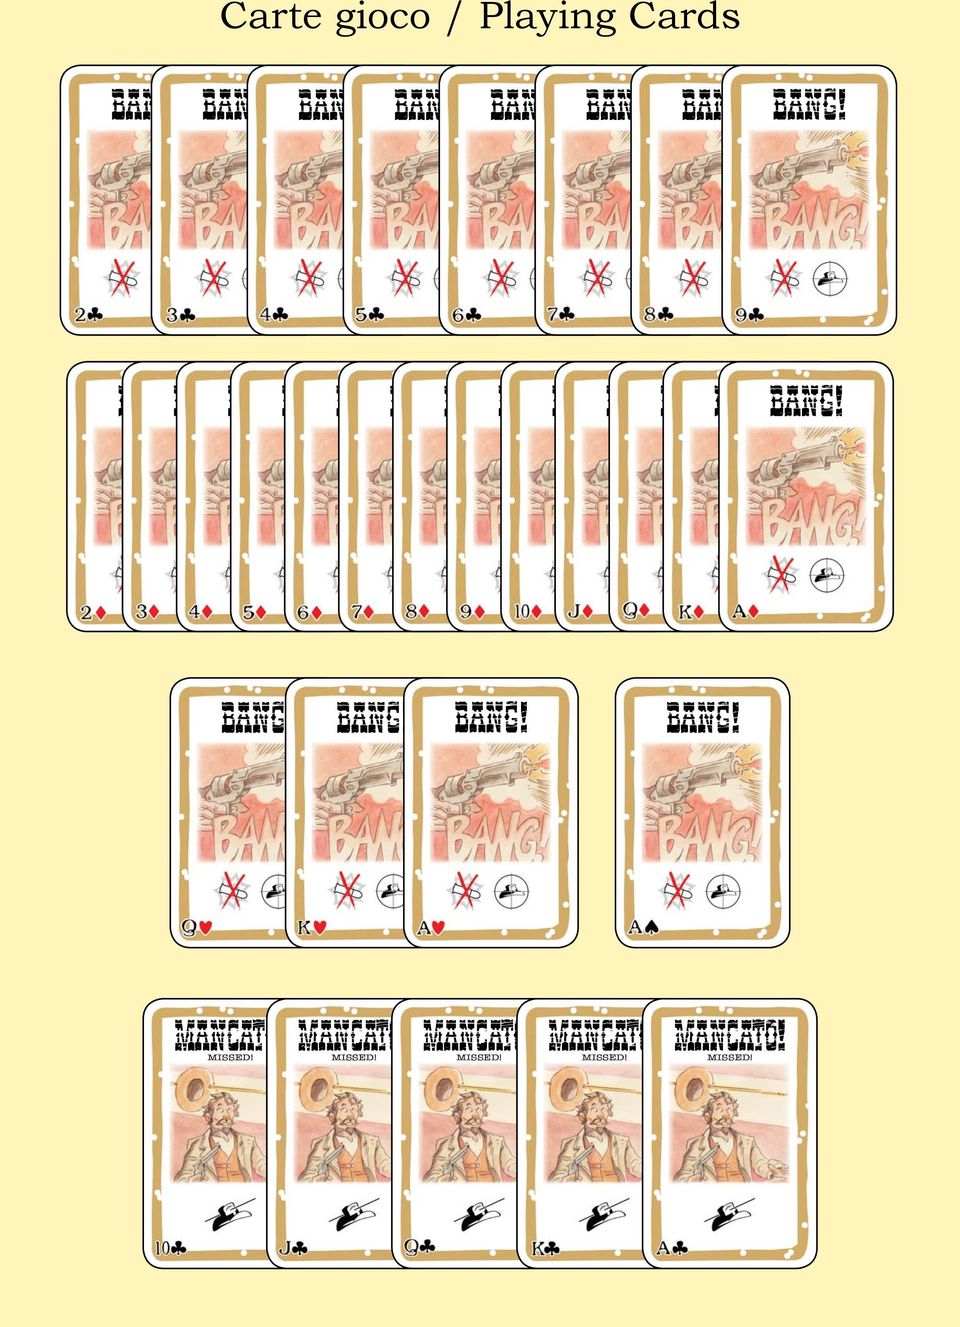 indd 04/07/20115611.39.34 04/07/2011 11.39.34 BANG! BANG!_CARDS_IV Edition_1-56.indd BANG!_CARDS_IV 45 BANG!_CARDS_IV Edition_1-56.indd 46 BANG!_CARDS_IV Edition_1-56.indd 04/07/2011 11.39.30 47 BANG!